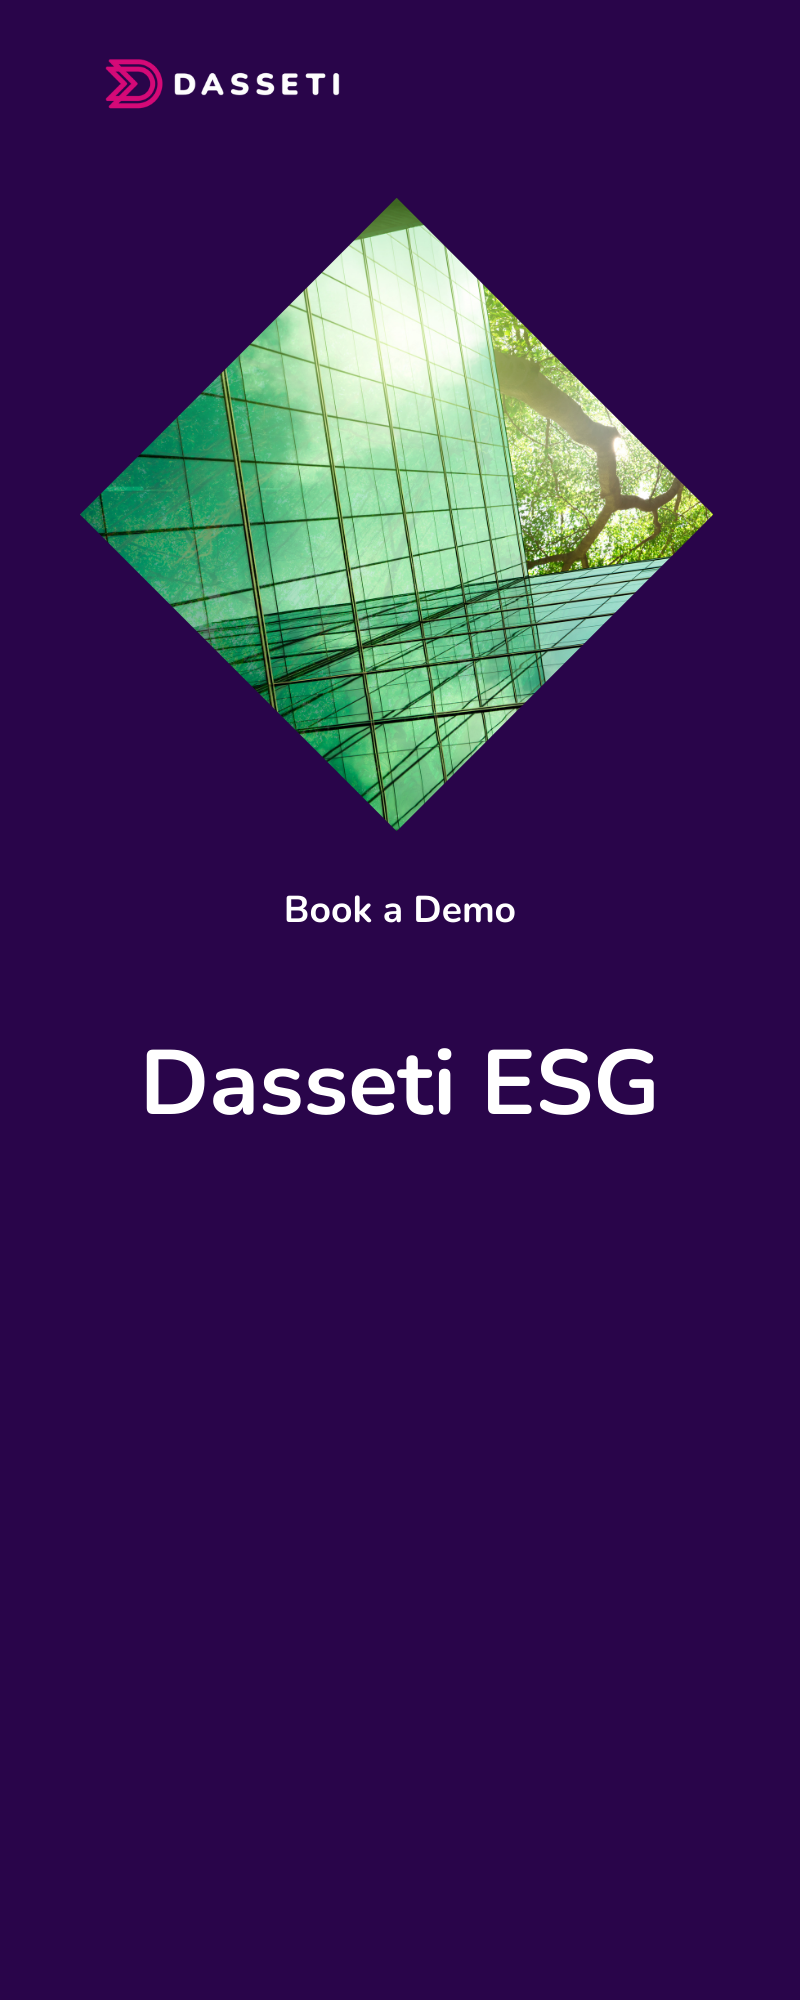 Book an ESG Demo